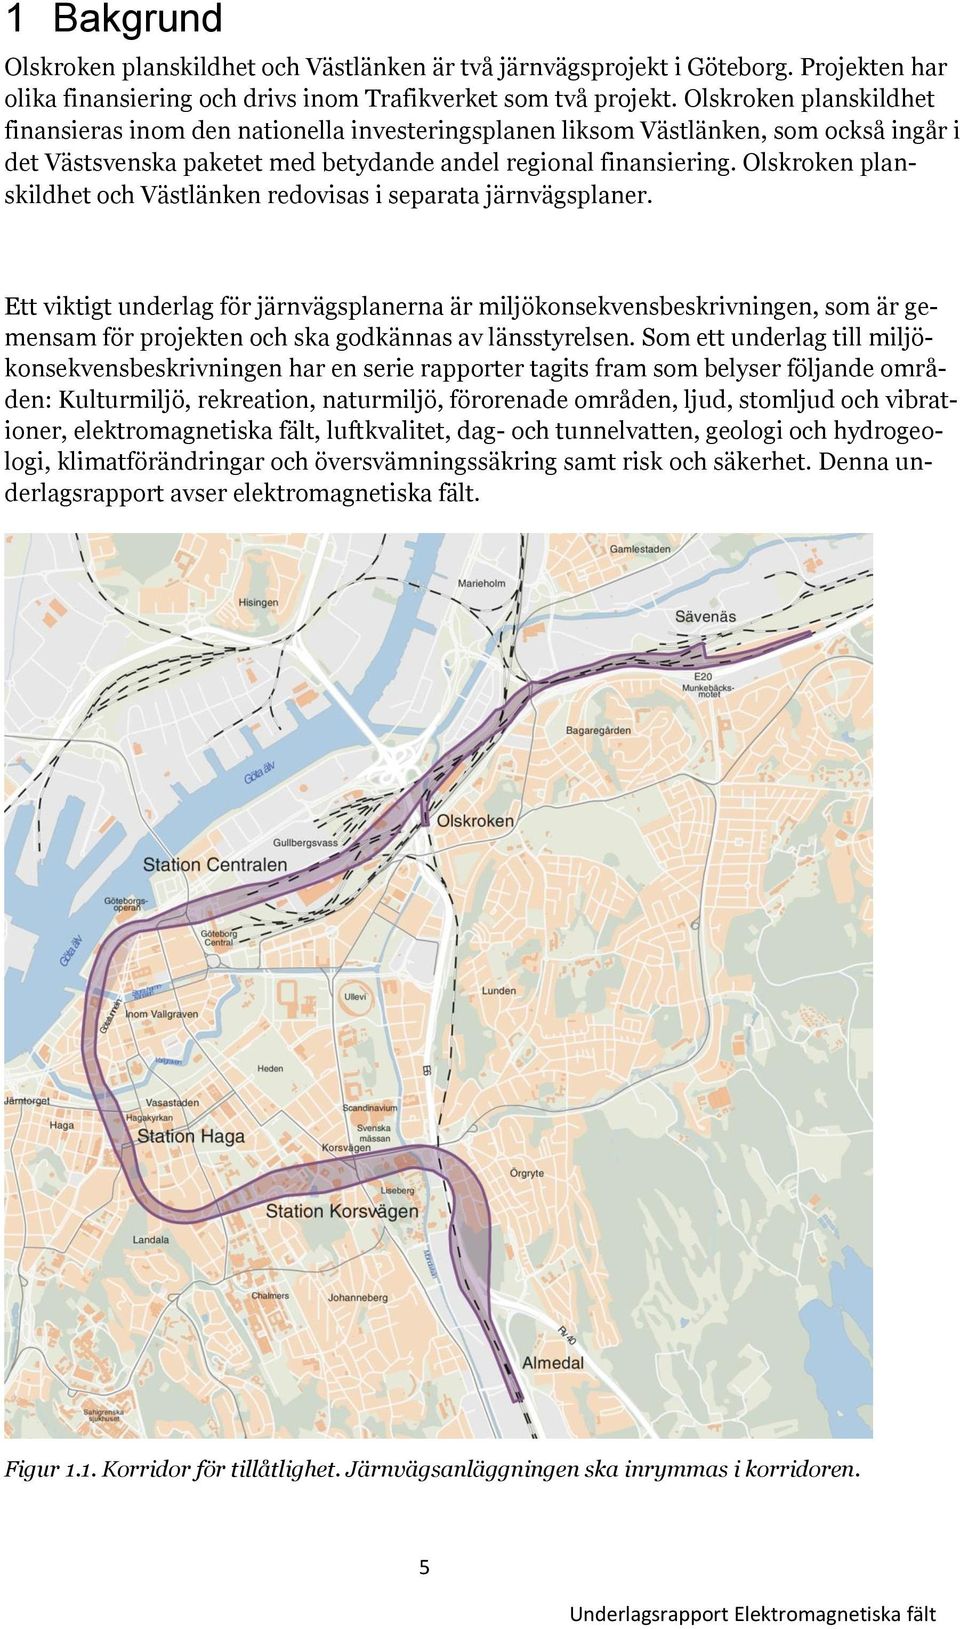 Olskroken planskildhet och Västlänken redovisas i separata järnvägsplaner.